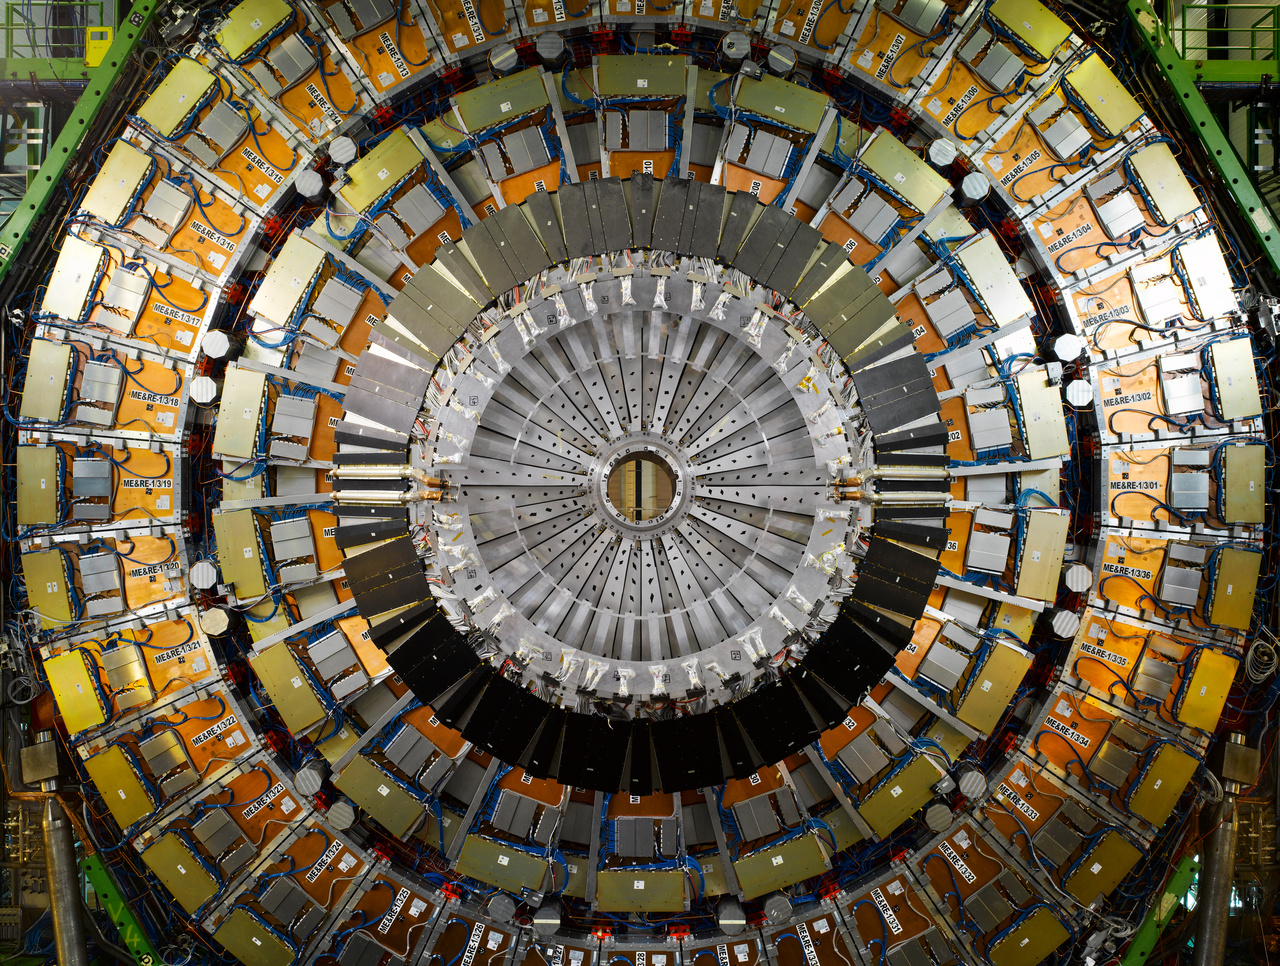 A Nagy Hadronütköztető CMS (Compact Muon Solenoid) detektorának 16 méter átmérőjű, 26 méter hosszú hordója már ránézésre is bonyolultabb és felfoghatatlanabb bárminél, amit az ember valaha épített. A CMS több célra használható: többek között a részecskefizika standard modellje, azon belül a Higgs-bozon vizsgálatára, de extra dimenziók, illetve a sötét anyagot alkotó részecskék vizsgálatára is alkalmas.